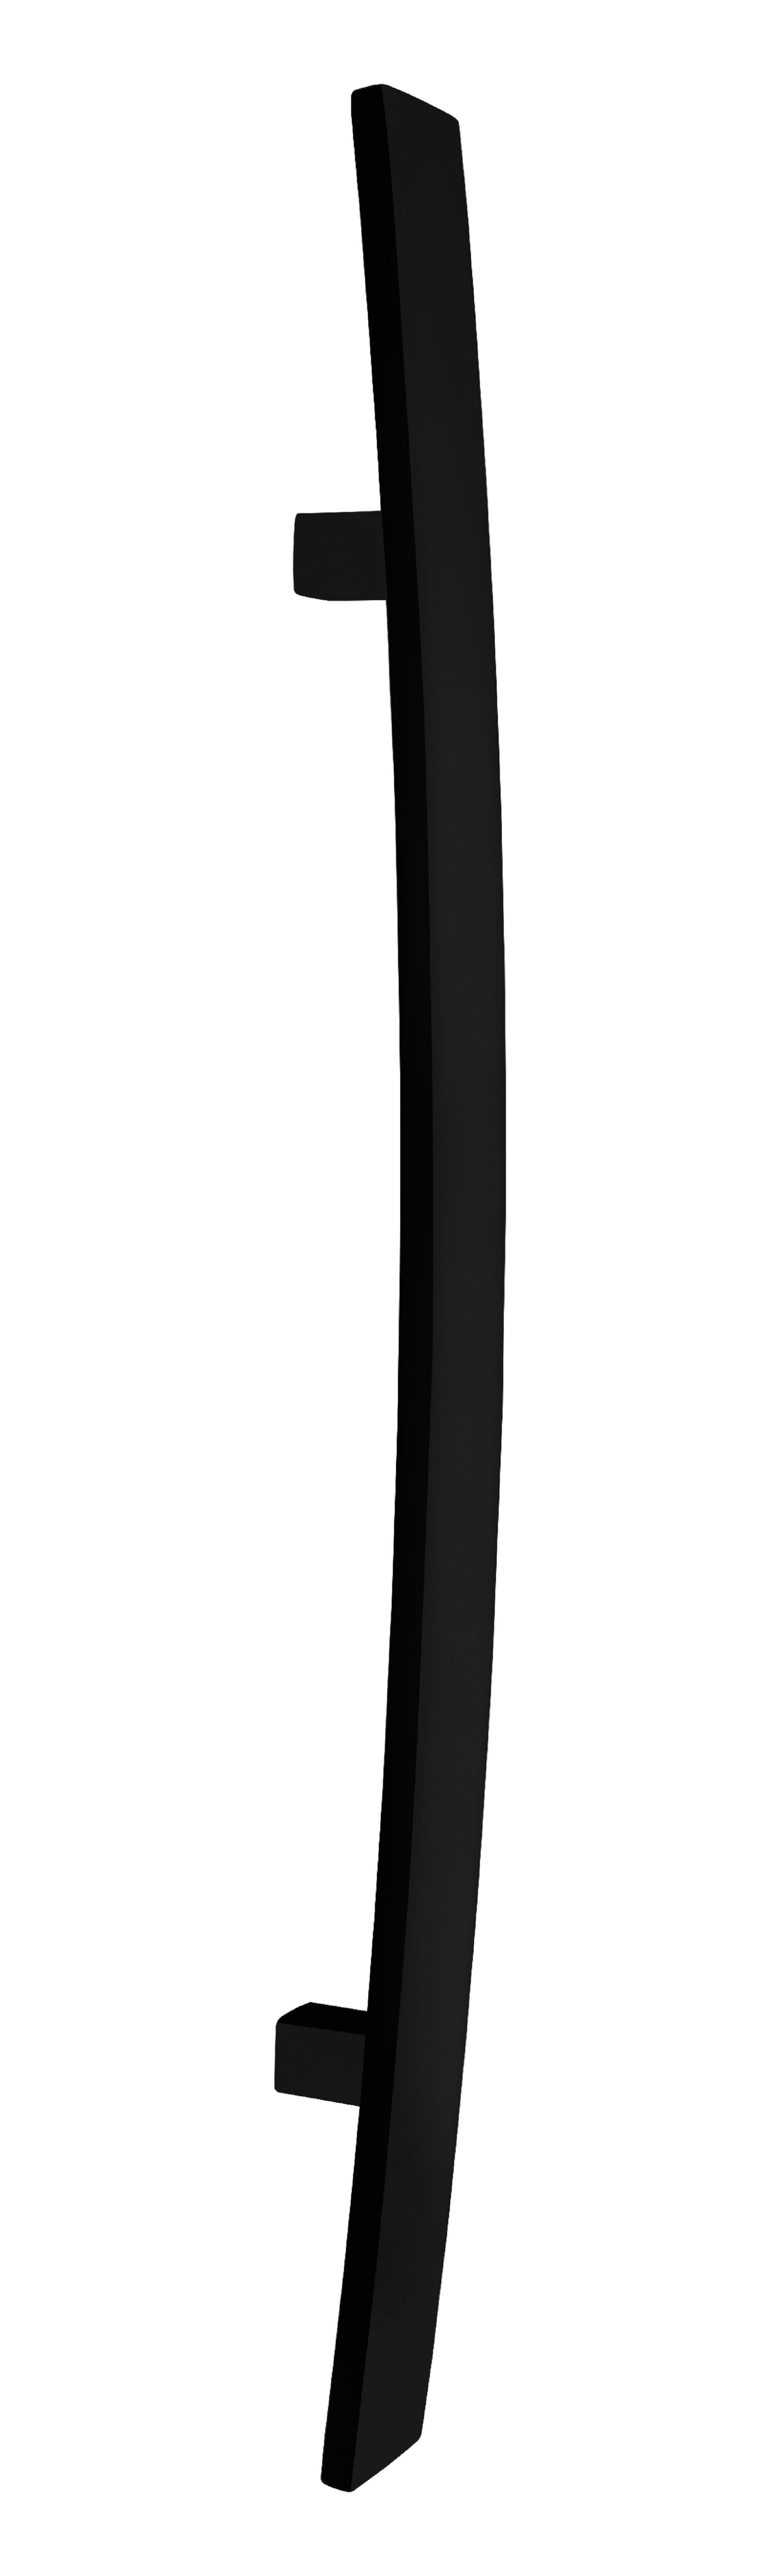 Manillón curvo inox 800mm 40x10 epoxi negro